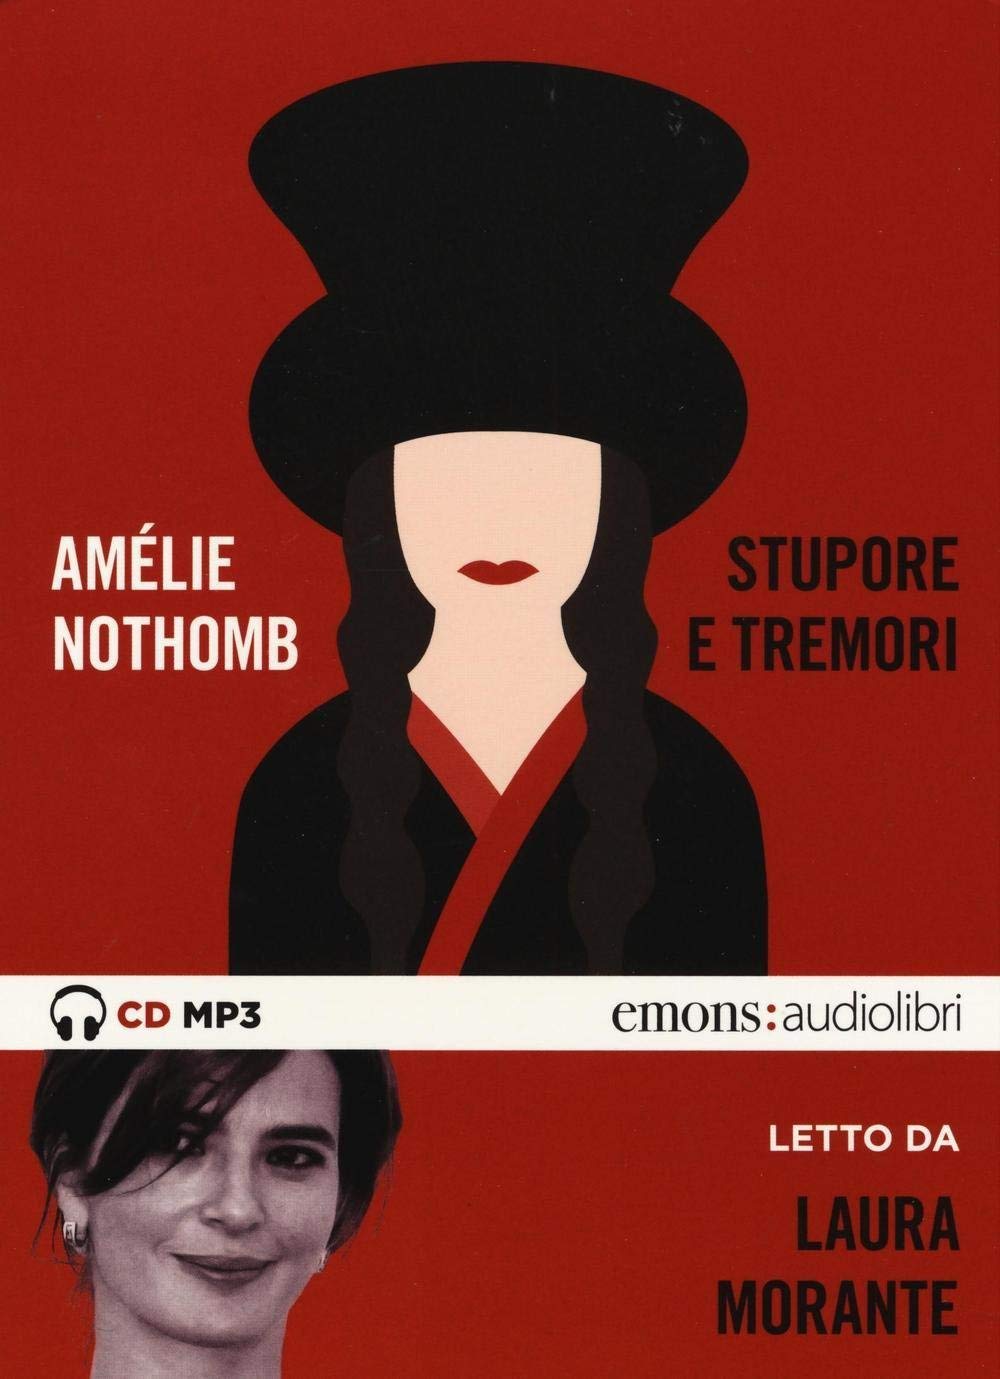 Audiolibro Amelie Nothomb - Nothomb, Amelie (Audiolibro) NUOVO SIGILLATO, EDIZIONE DEL 16/06/2016 SUBITO DISPONIBILE